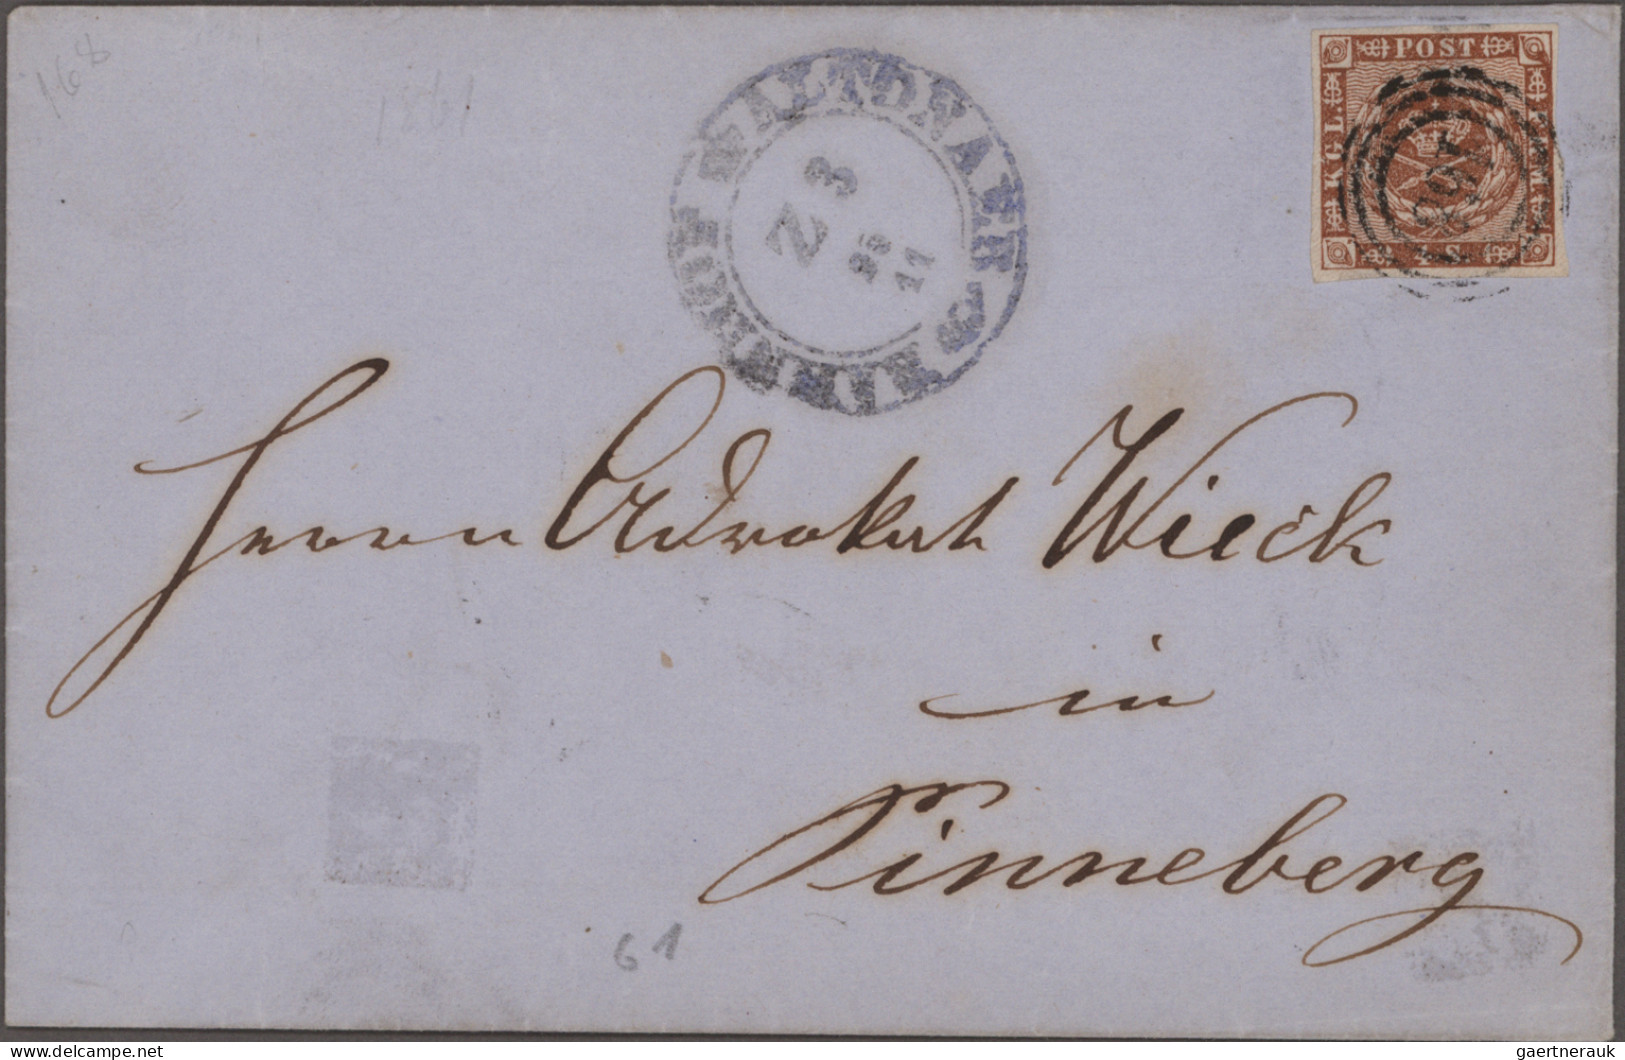 Schleswig-Holstein - Marken und Briefe: 1855/1866 (ca.), schöne Sammlung mit sel